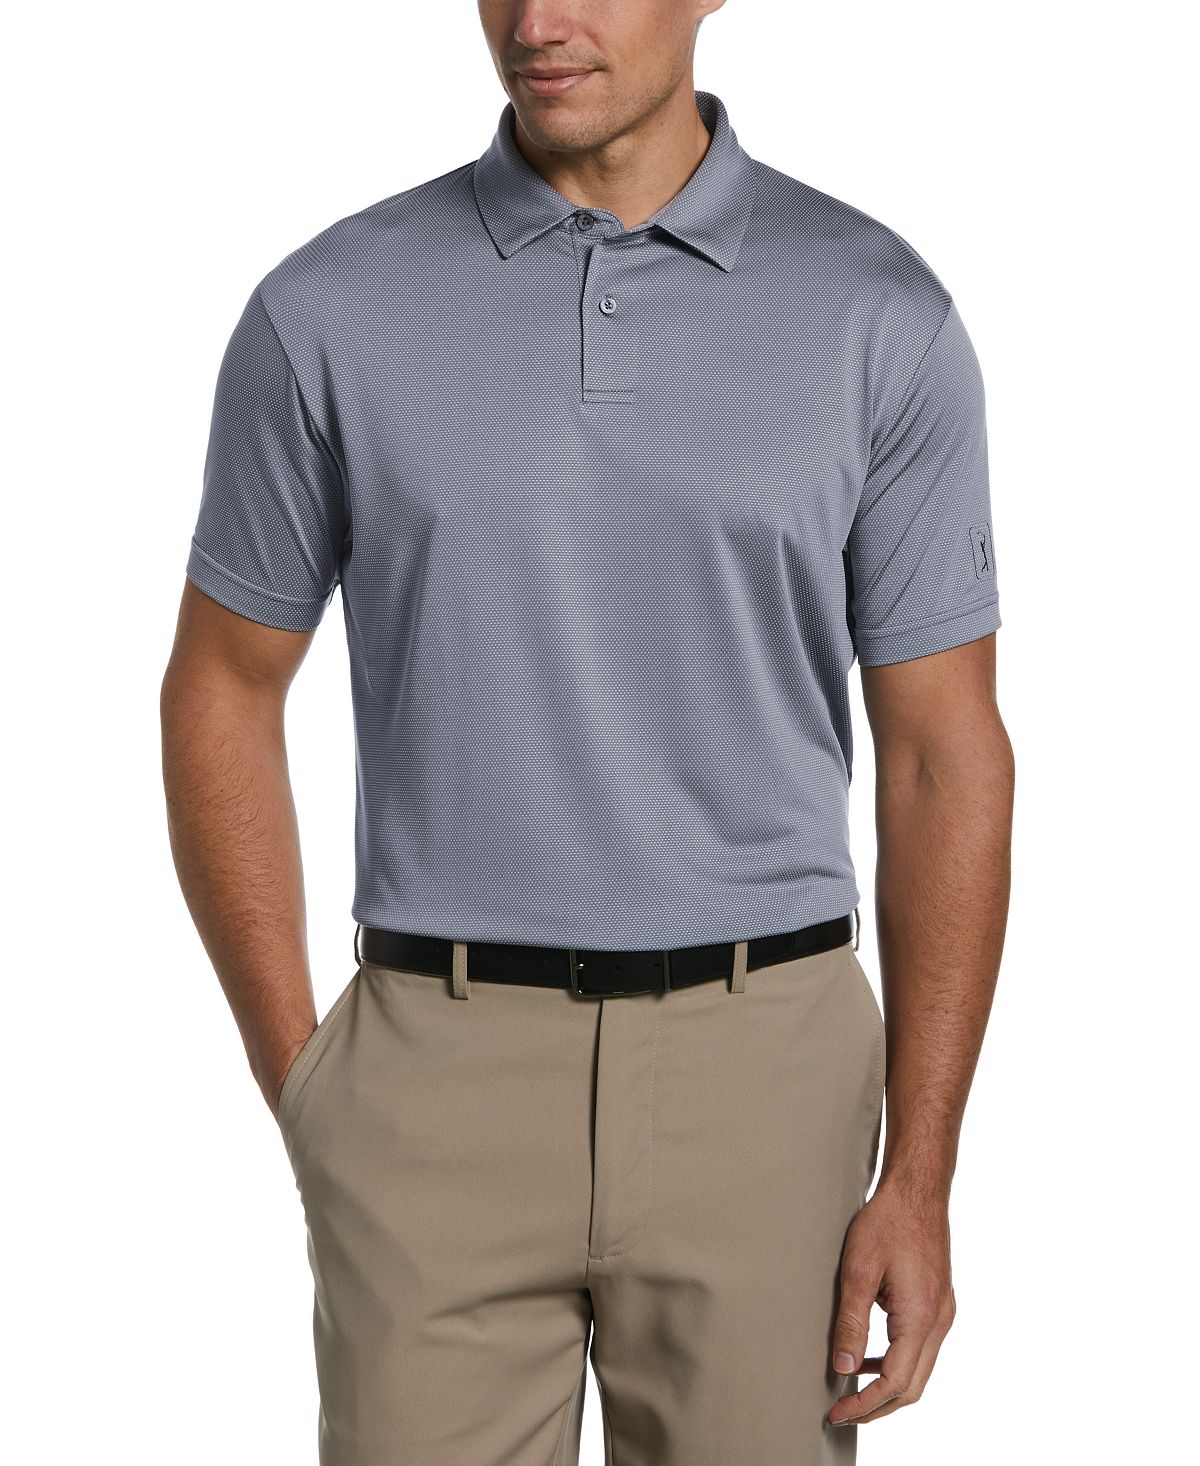 Мужская рубашка-поло с короткими рукавами и фактурной текстурой «птичий глаз» PGA TOUR мячи для гольфа nxt tour s 50 шт качество aaa идеальное сочетание мячей для гольфа tour nxt tour для каждого игрока в гольф